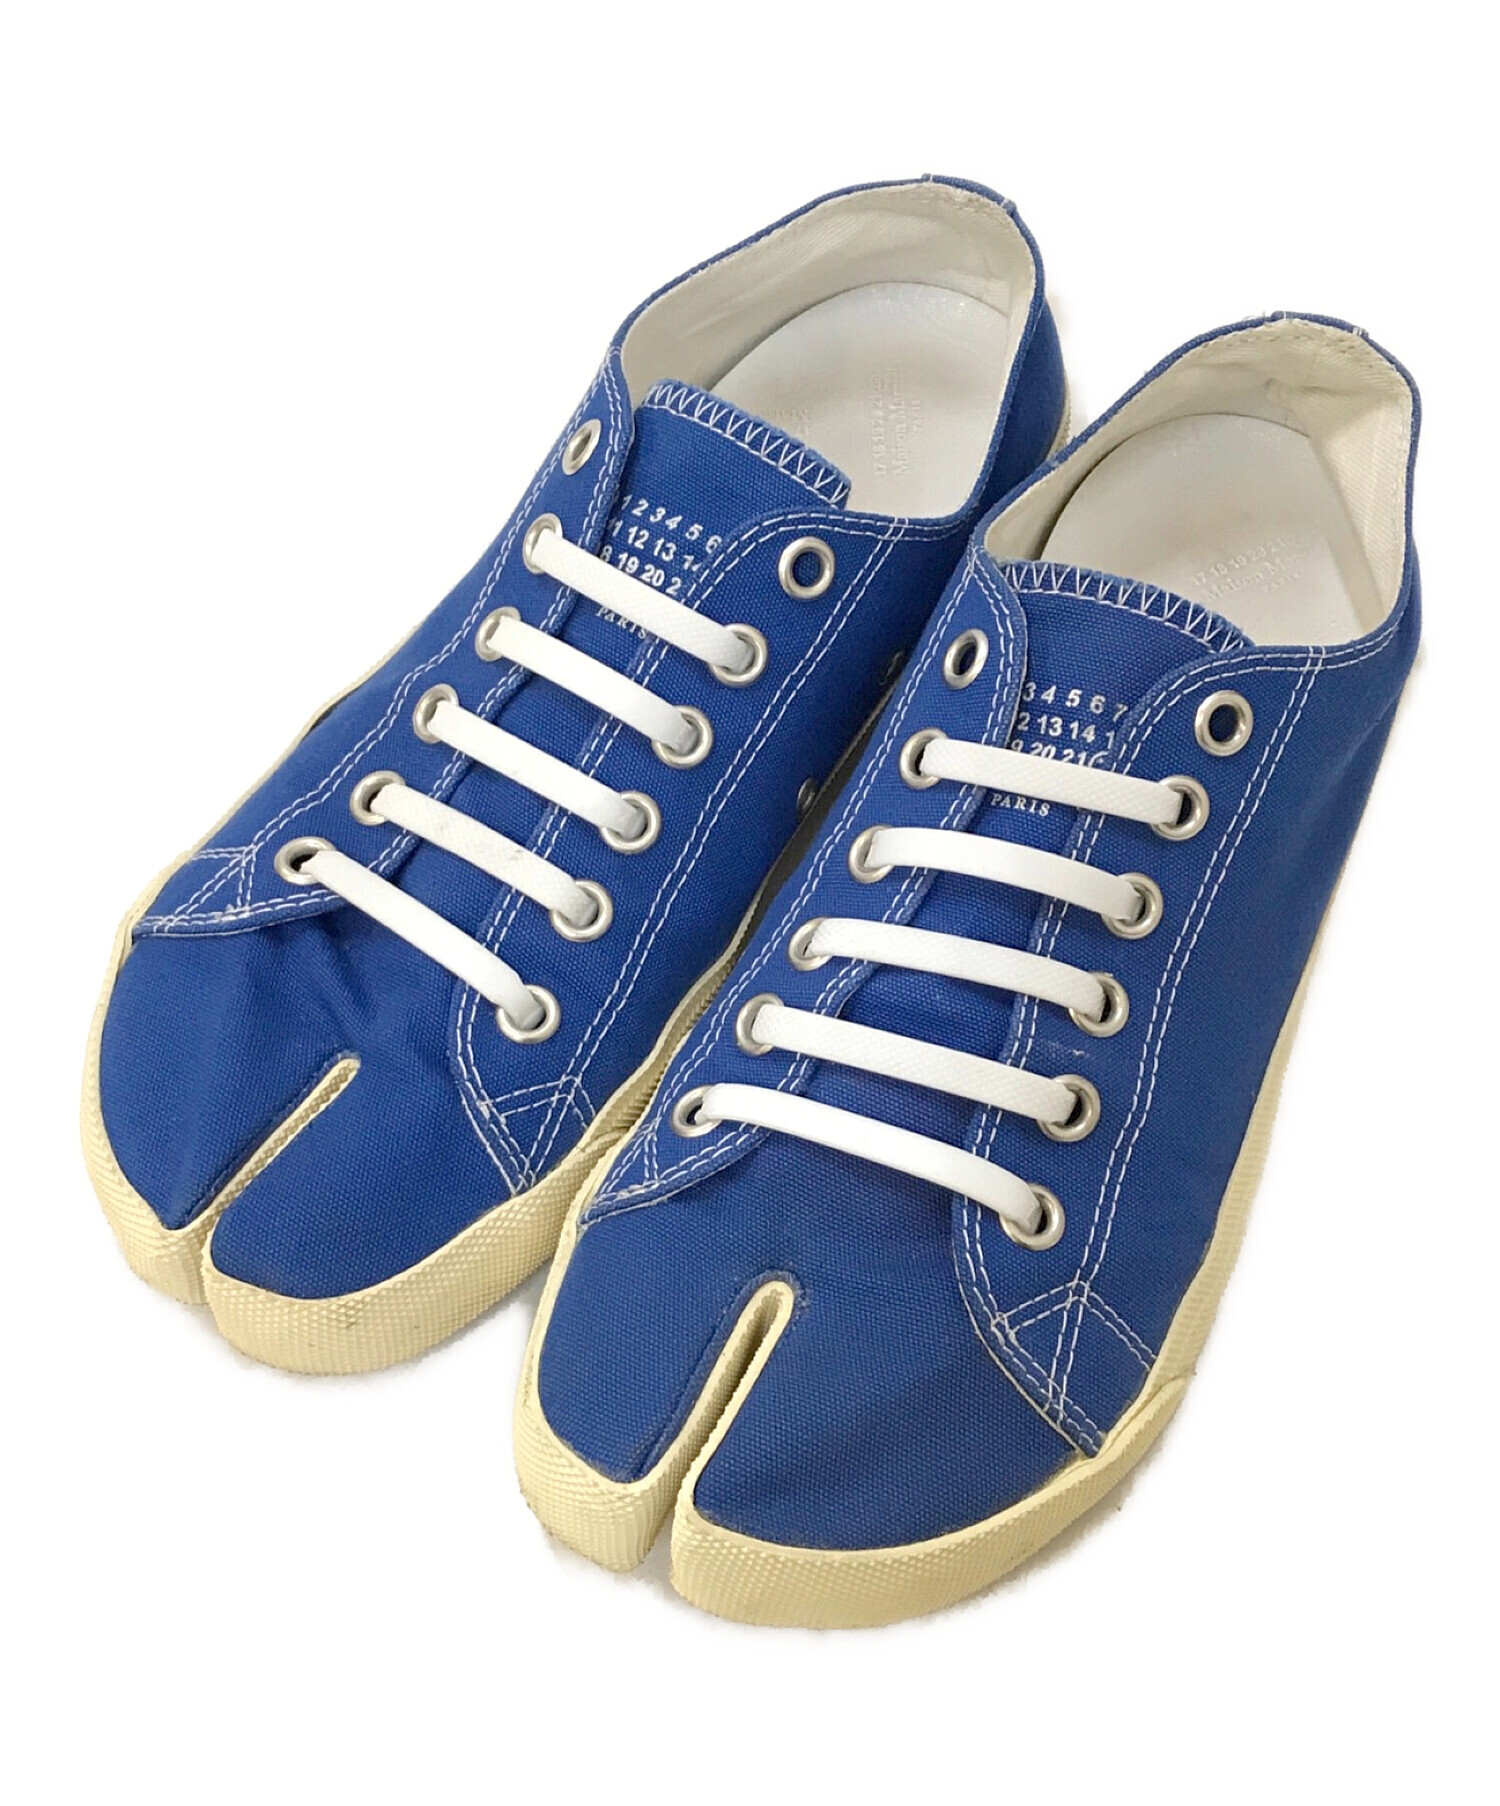 Maison Margiela (メゾンマルジェラ) 足袋 キャンバススニーカー ブルー サイズ:41